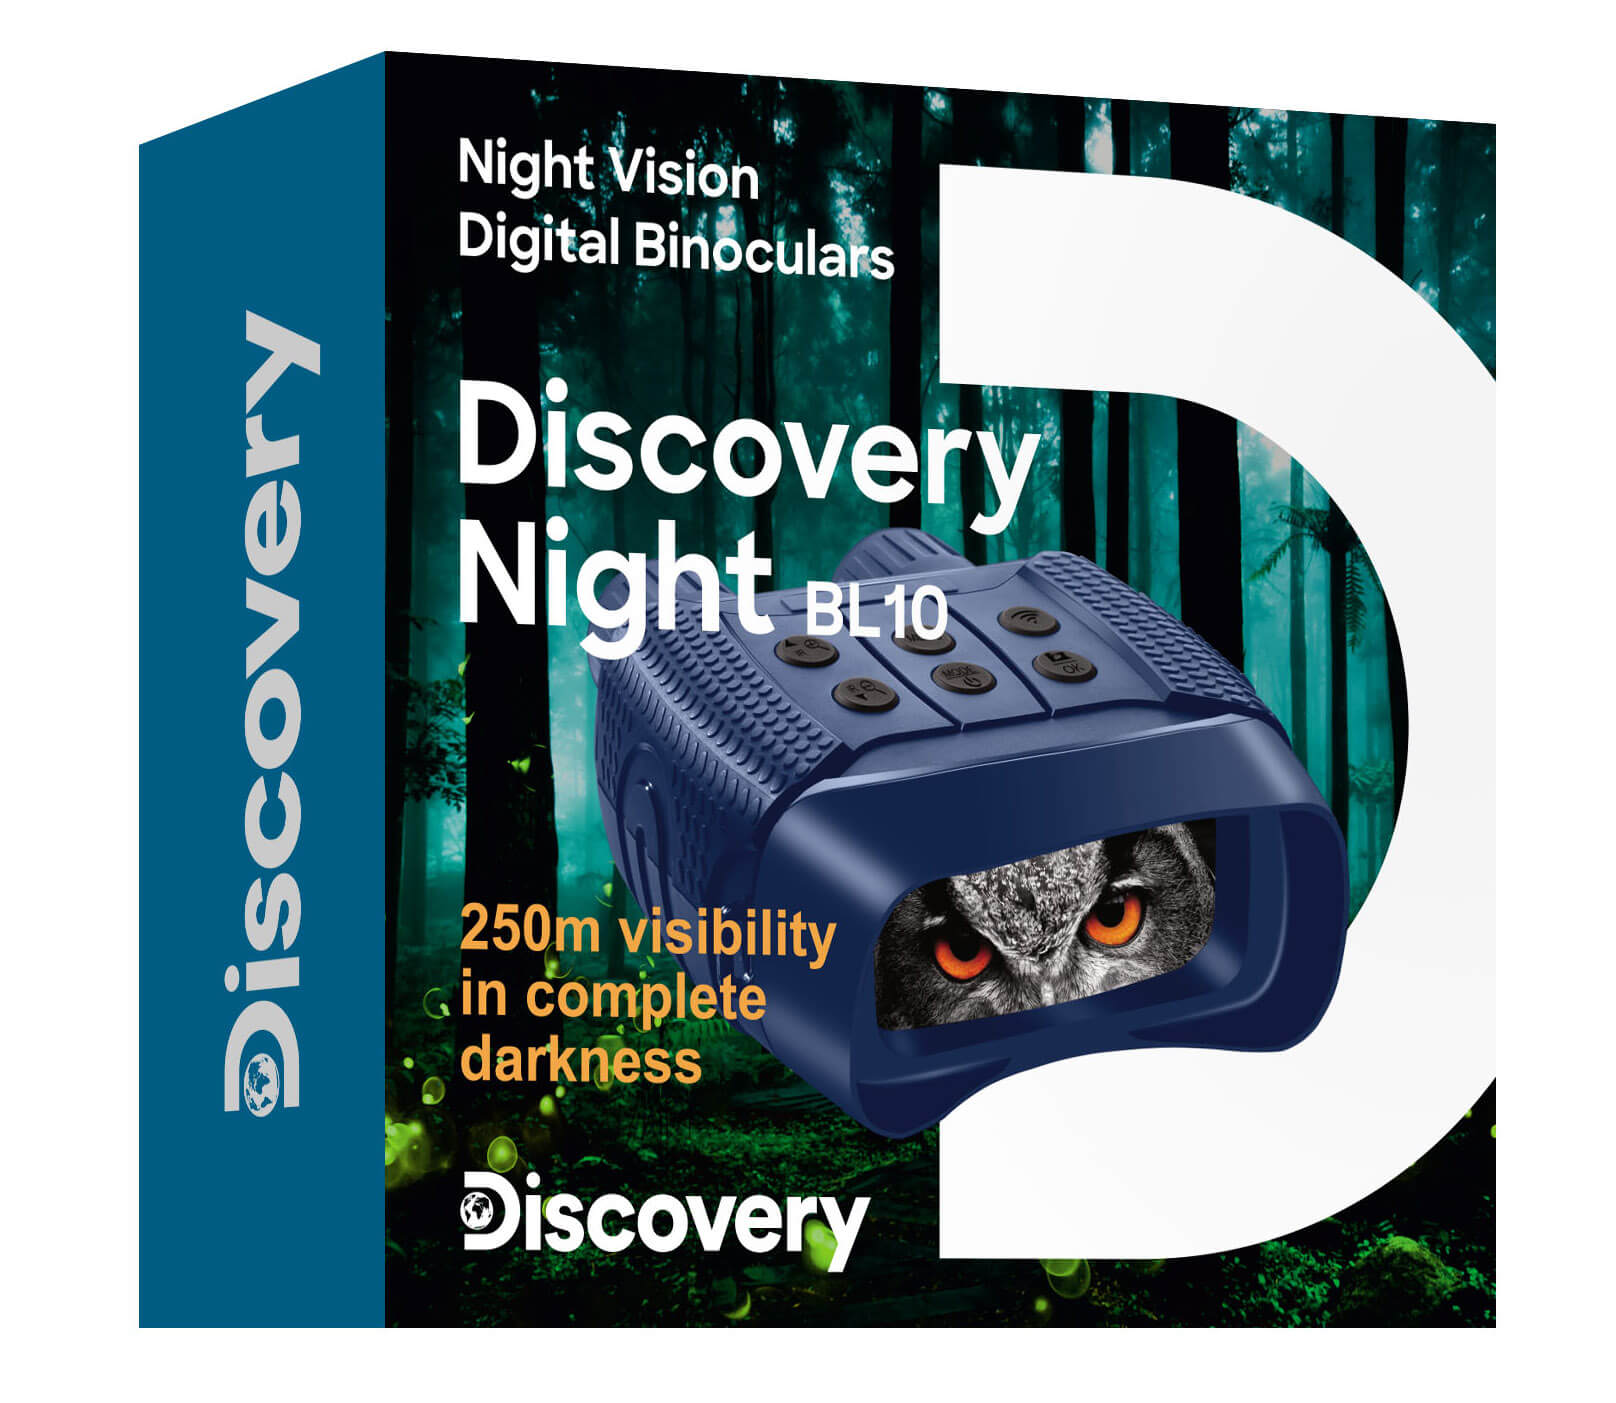 Digitálny binokulárny ďalekohľad s nočným videním so statívom Discovery Night BL10